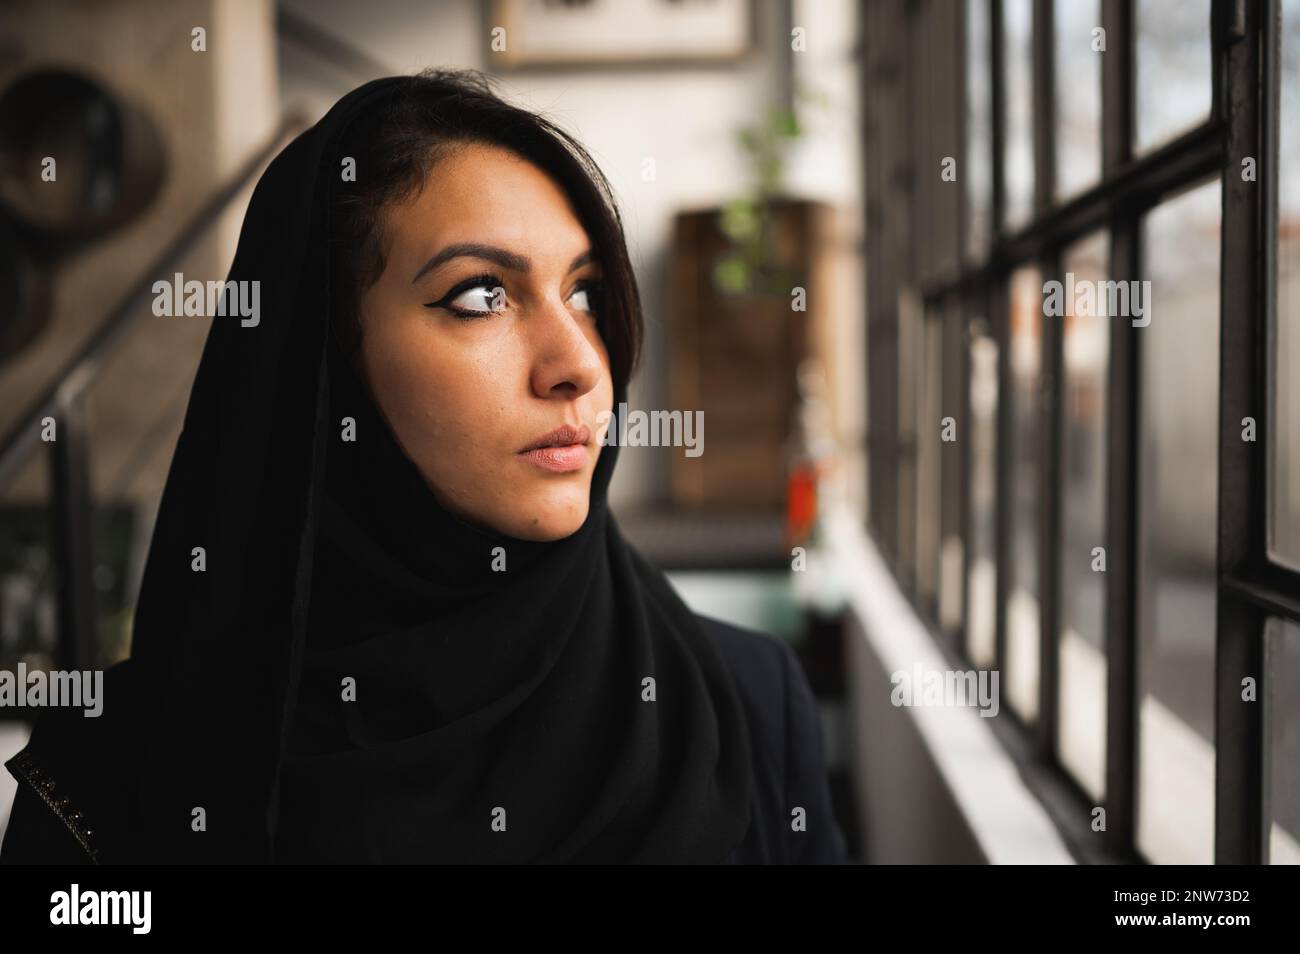 Nahaufnahme einer jungen attraktiven araberin mit schwarzem Schleier. Weibliches Profil, das aus dem Fenster schaut, mit ernstem Gesicht. Stockfoto